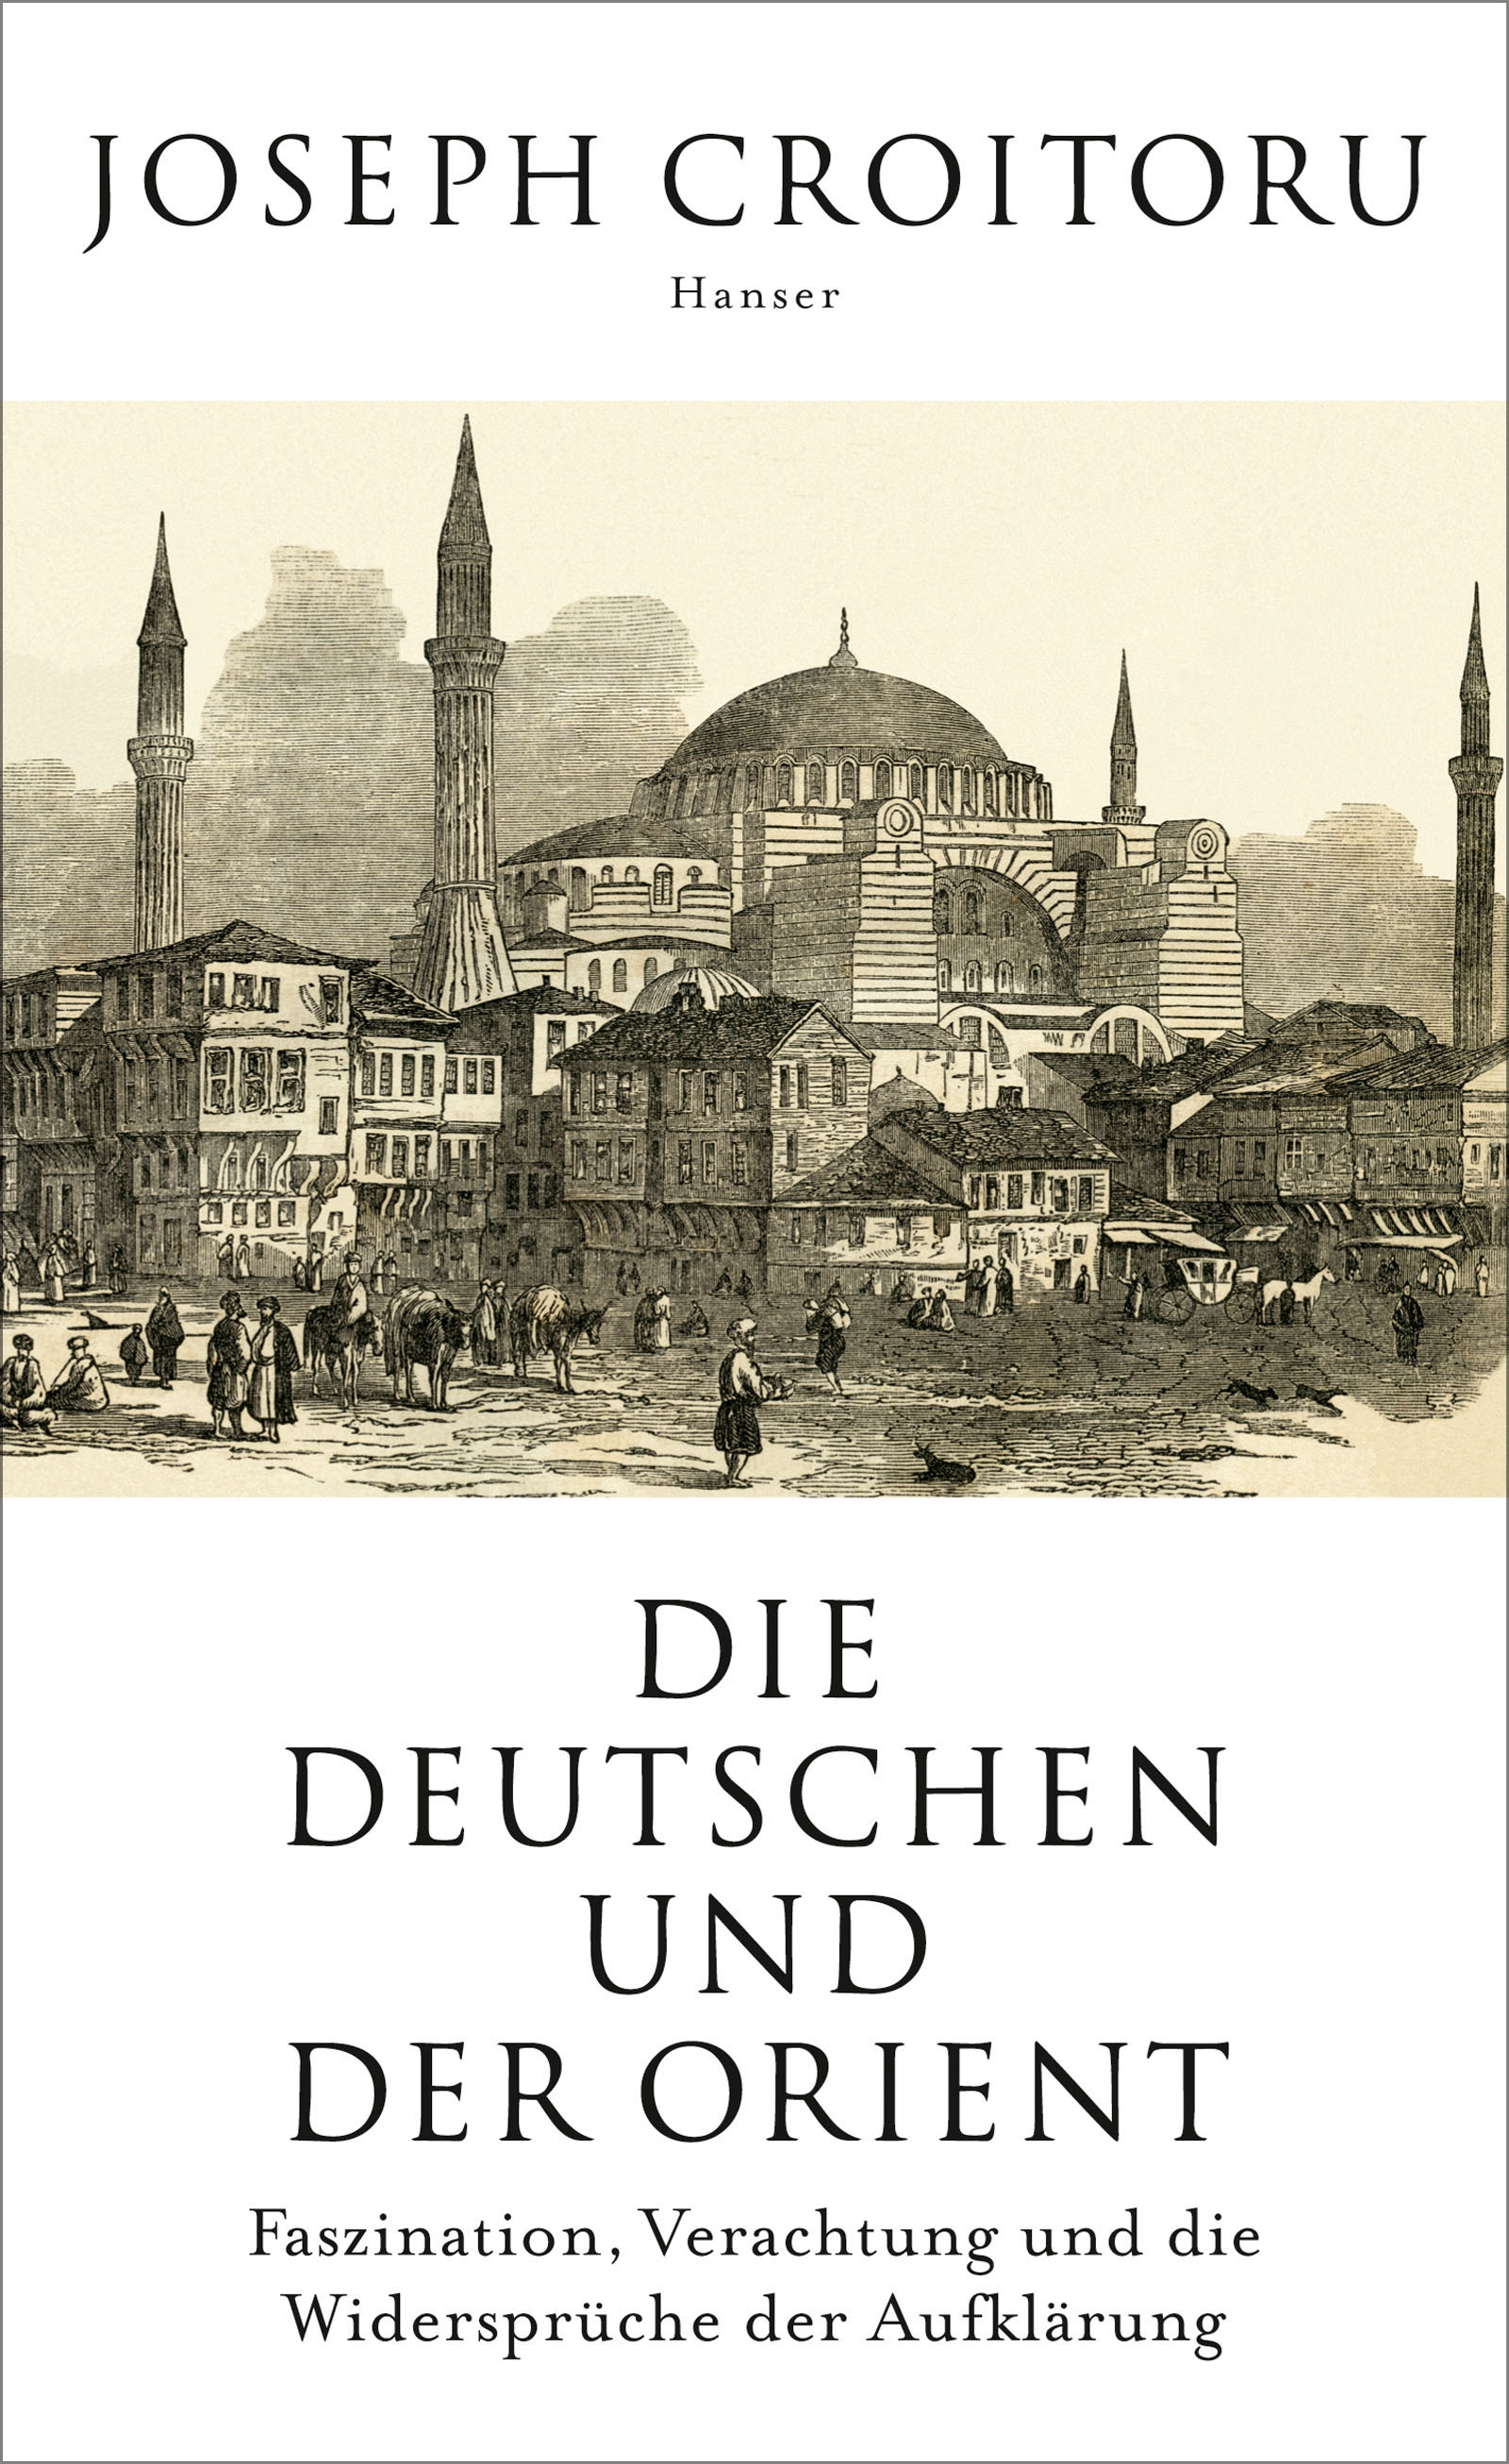 Buchcover Joseph Croitoru: "Die Deutschen und der Orient: Faszination, Verachtung und die Widersprüche der Aufklärung" im Carl Hanser Verlag